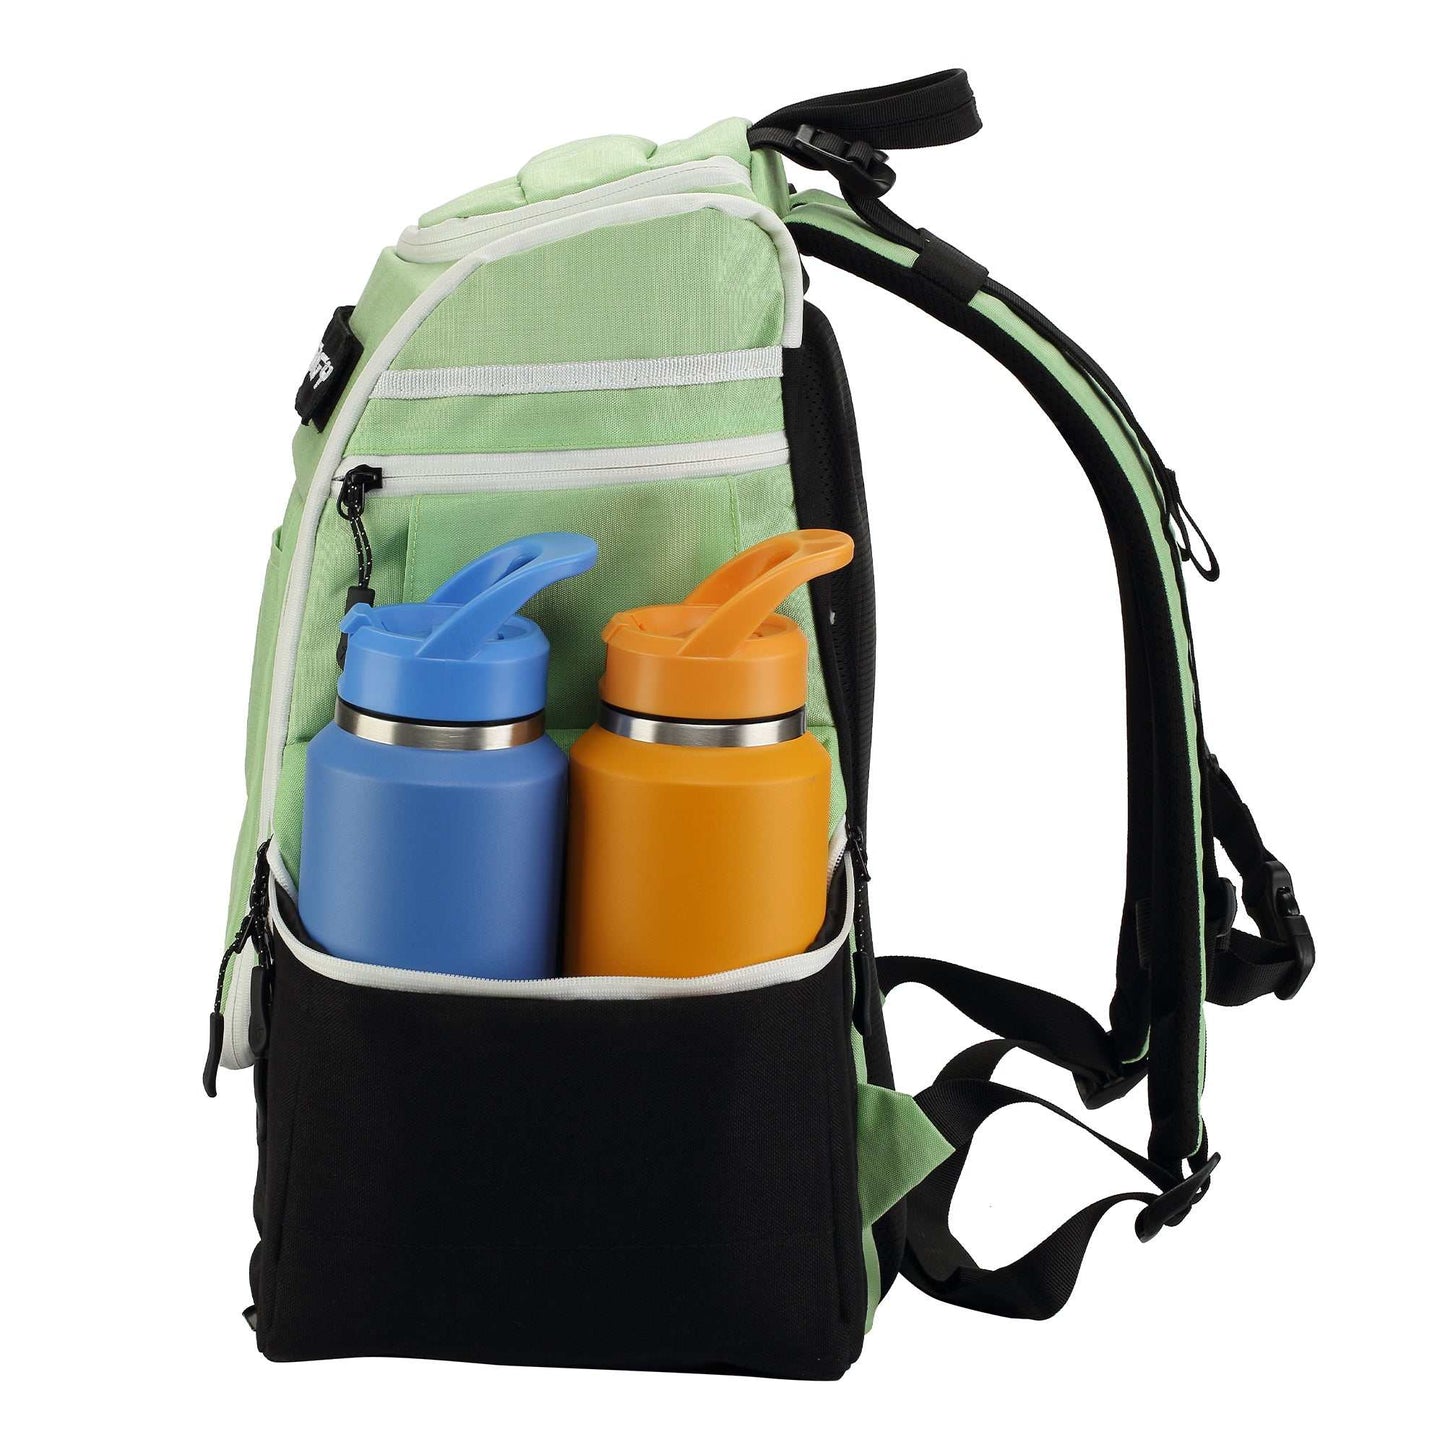 Prodigy Apex XL Backpack Disc Golf Bag - Disc Golf Deals USA